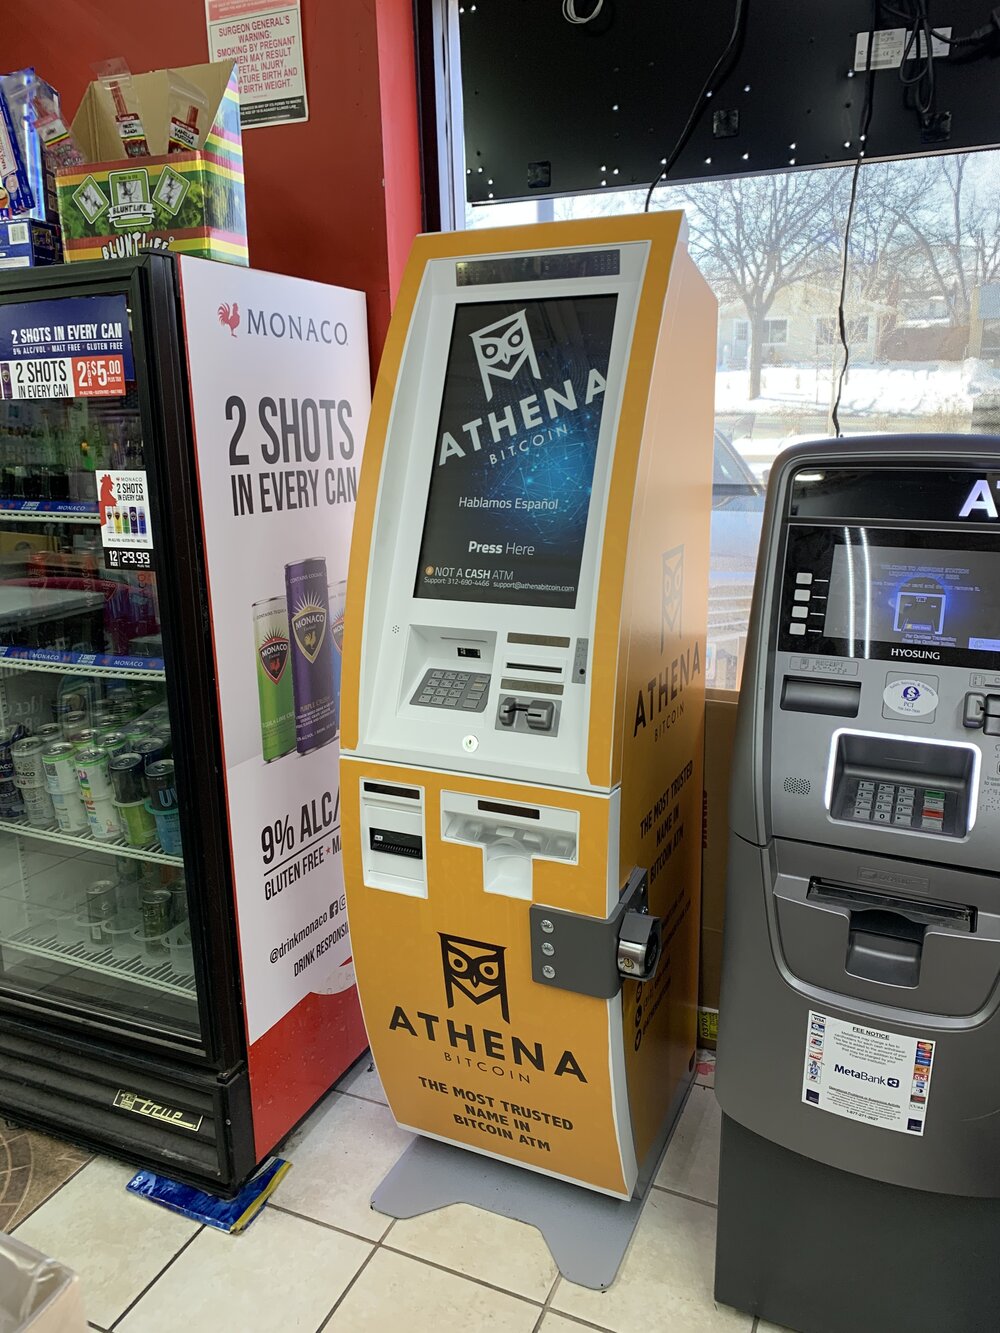 Bitcoin ATM near Rome